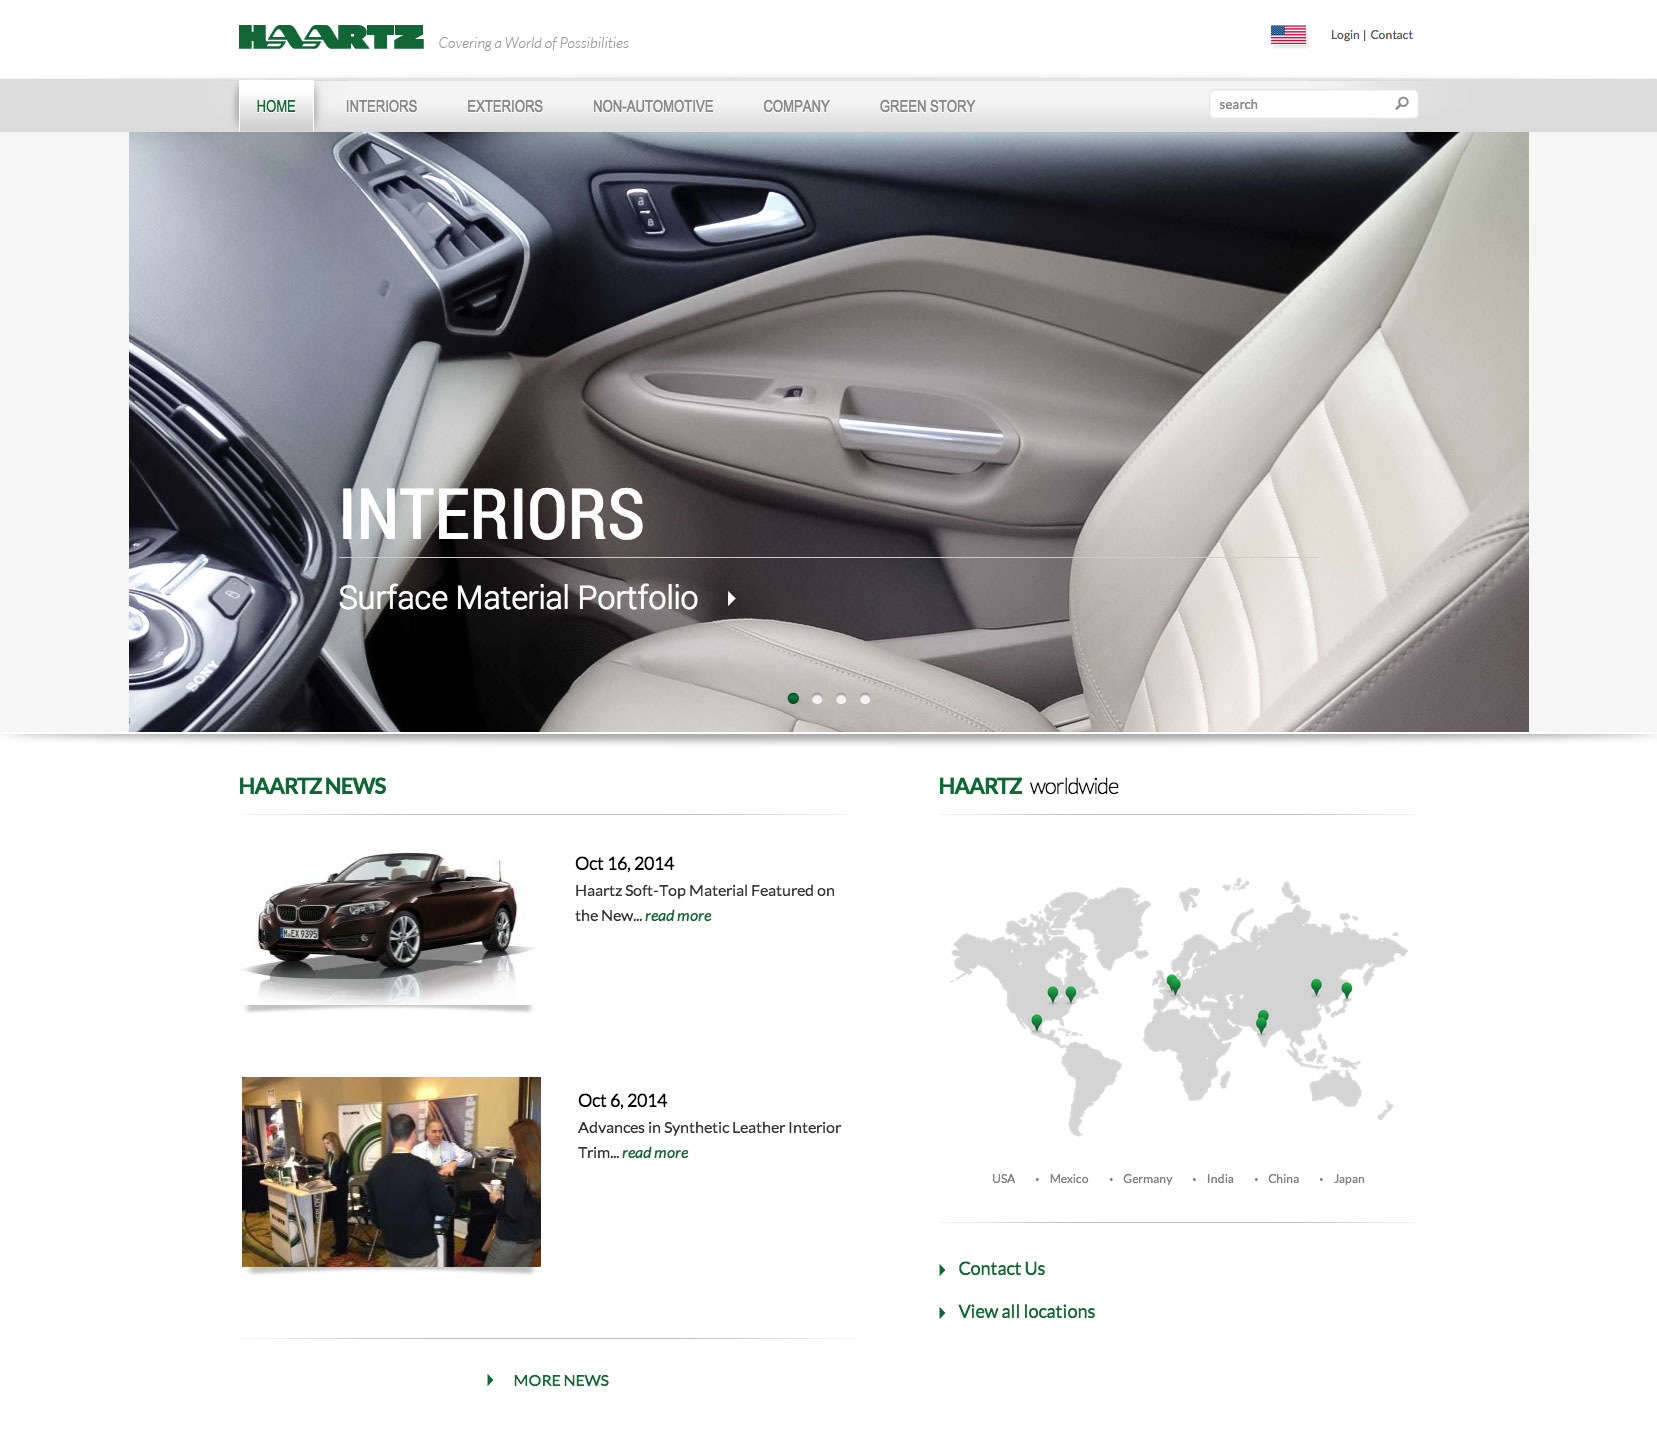 Haartz website homepage, designed by Bartlett Interactive